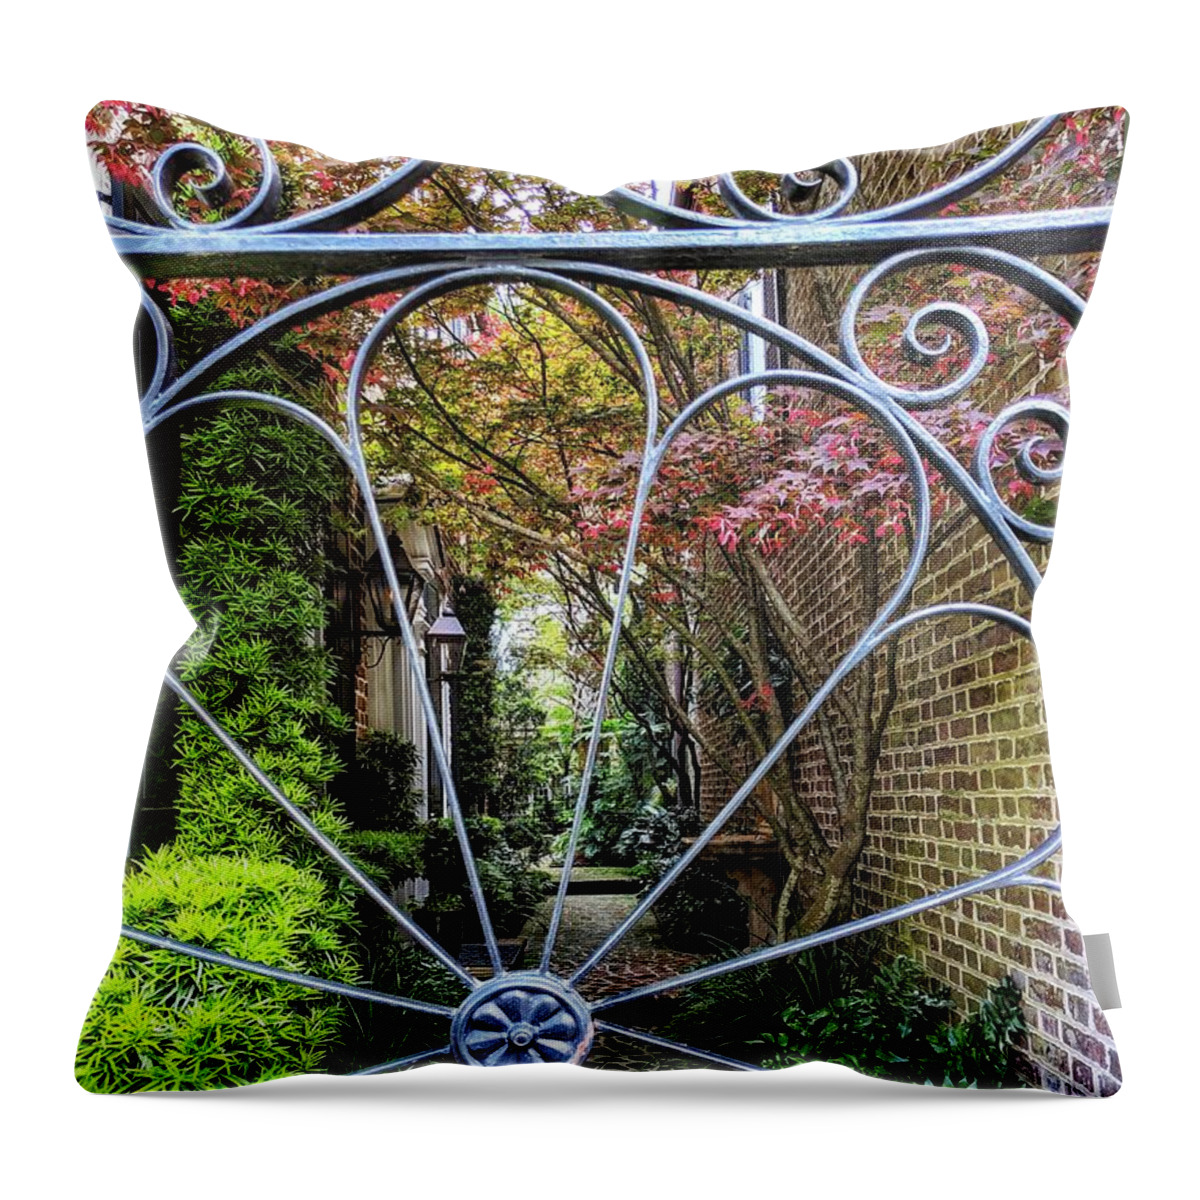 Garden Throw Pillow featuring the photograph Peek-A-Boo Garden by Portia Olaughlin